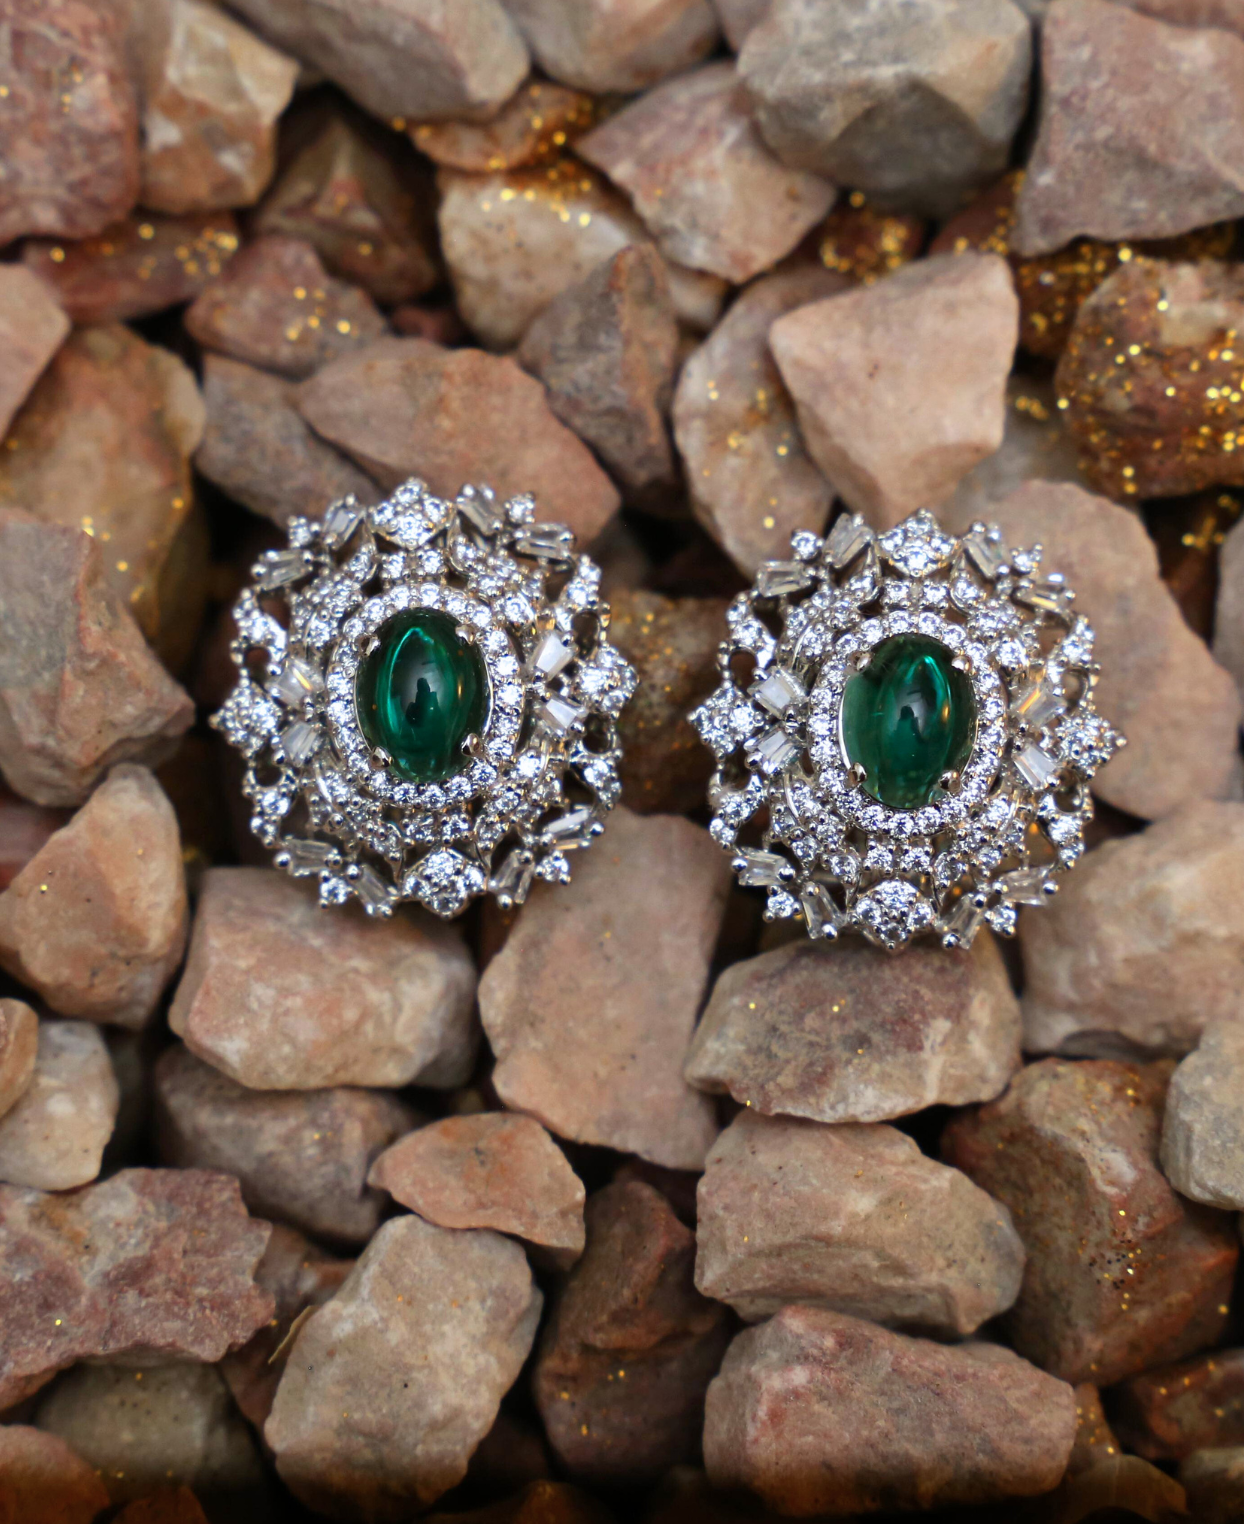 Emerald in a Diamond Mine